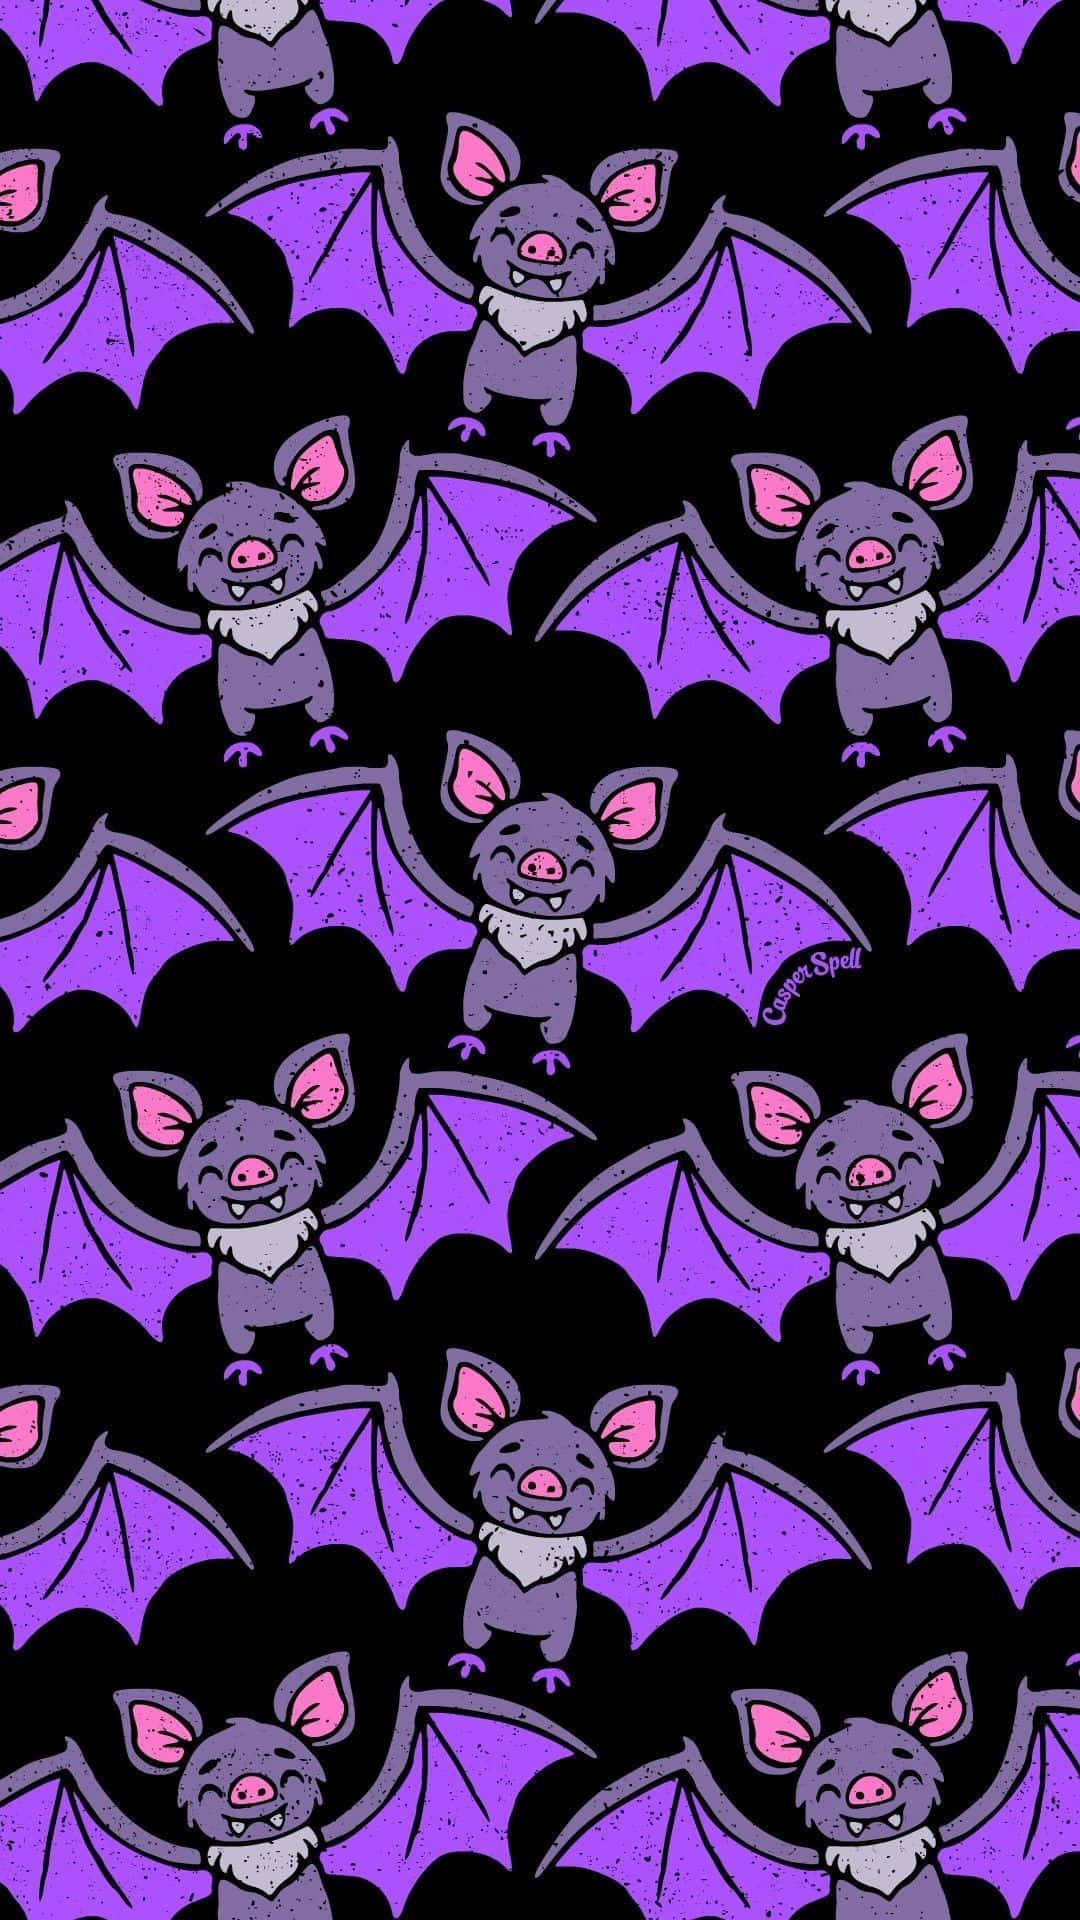 Cute Halloween Backgrounds Bats 1080x1080 cute HD phone wallpaper  Pxfuel